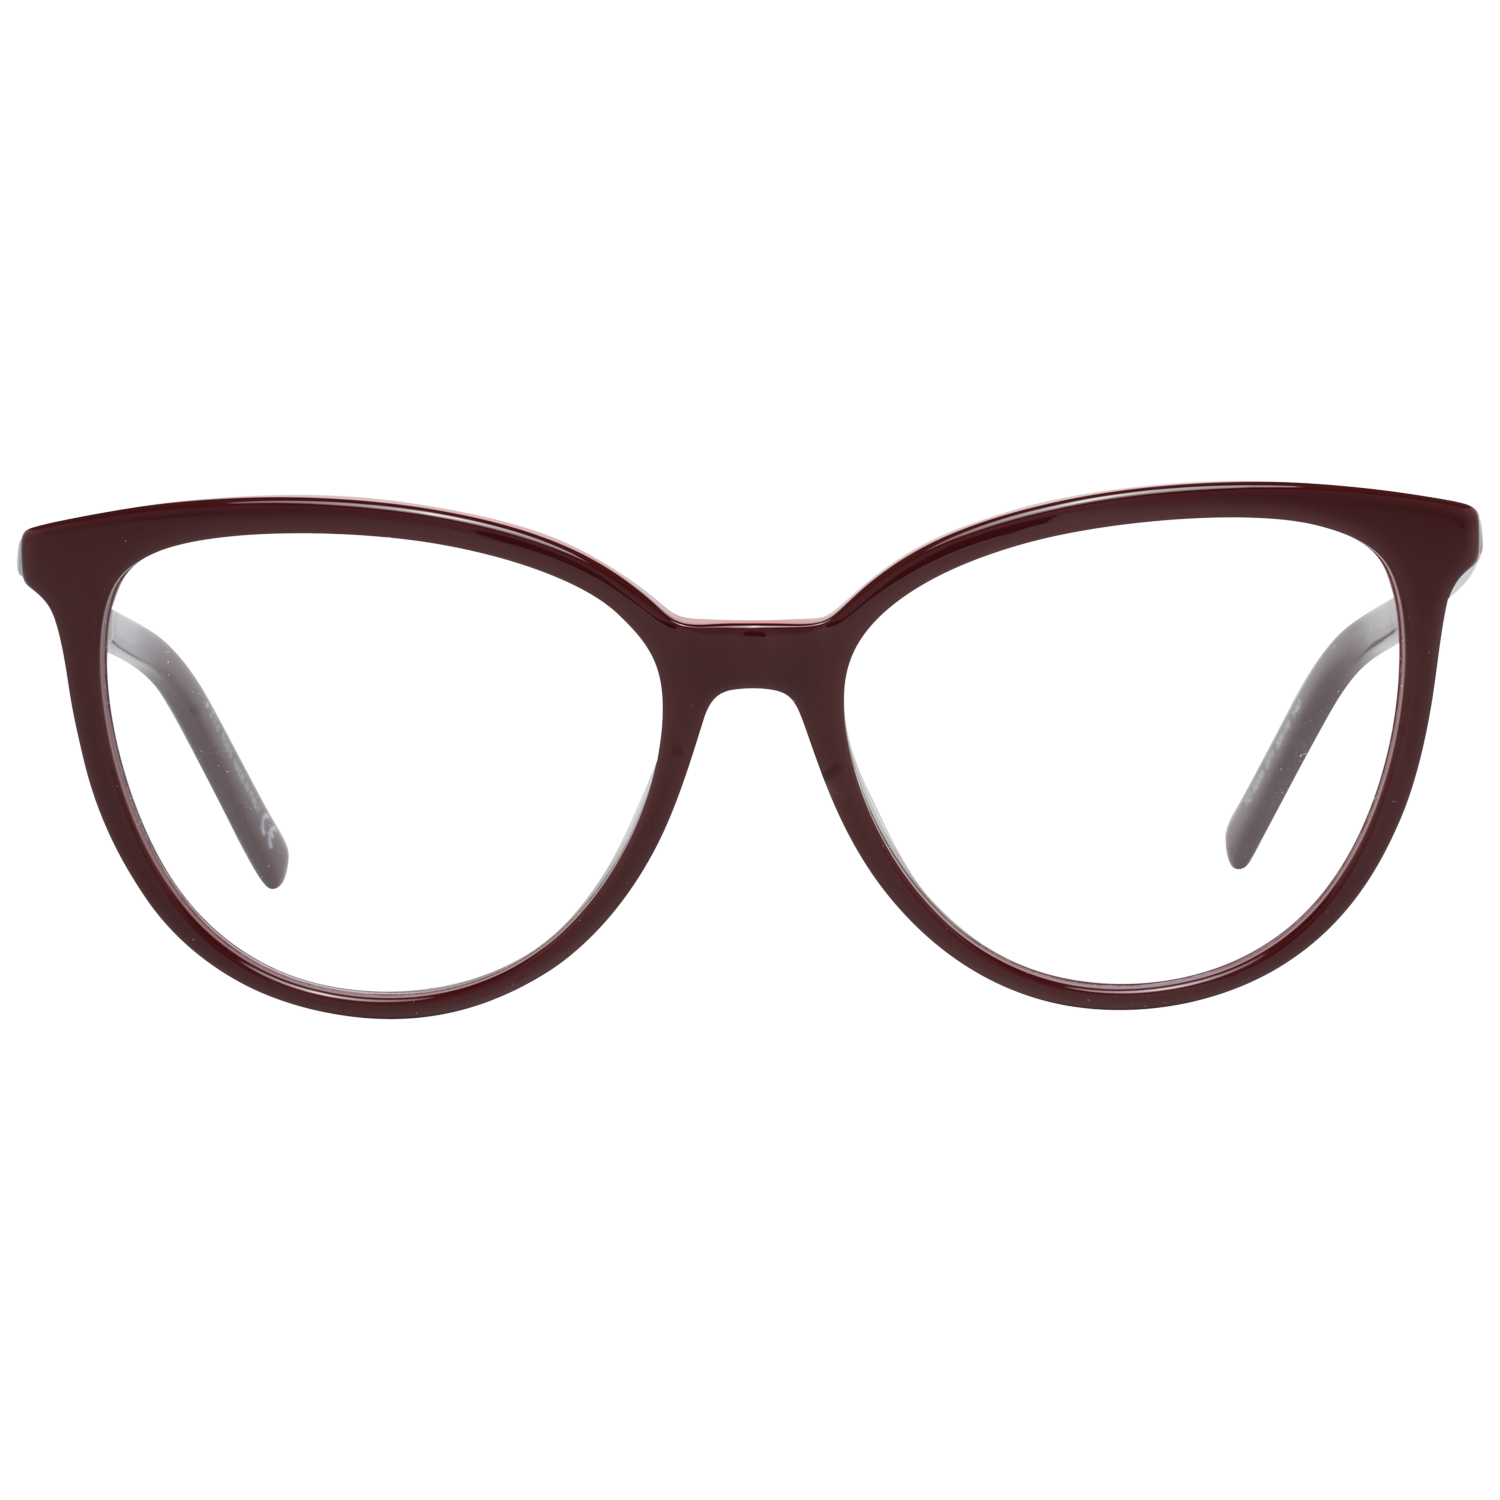 Tods Frames Tods Glasses Women's Burgundy Cat-Eye Frames TO5208 071 55mm Eyeglasses Eyewear UK USA Australia 